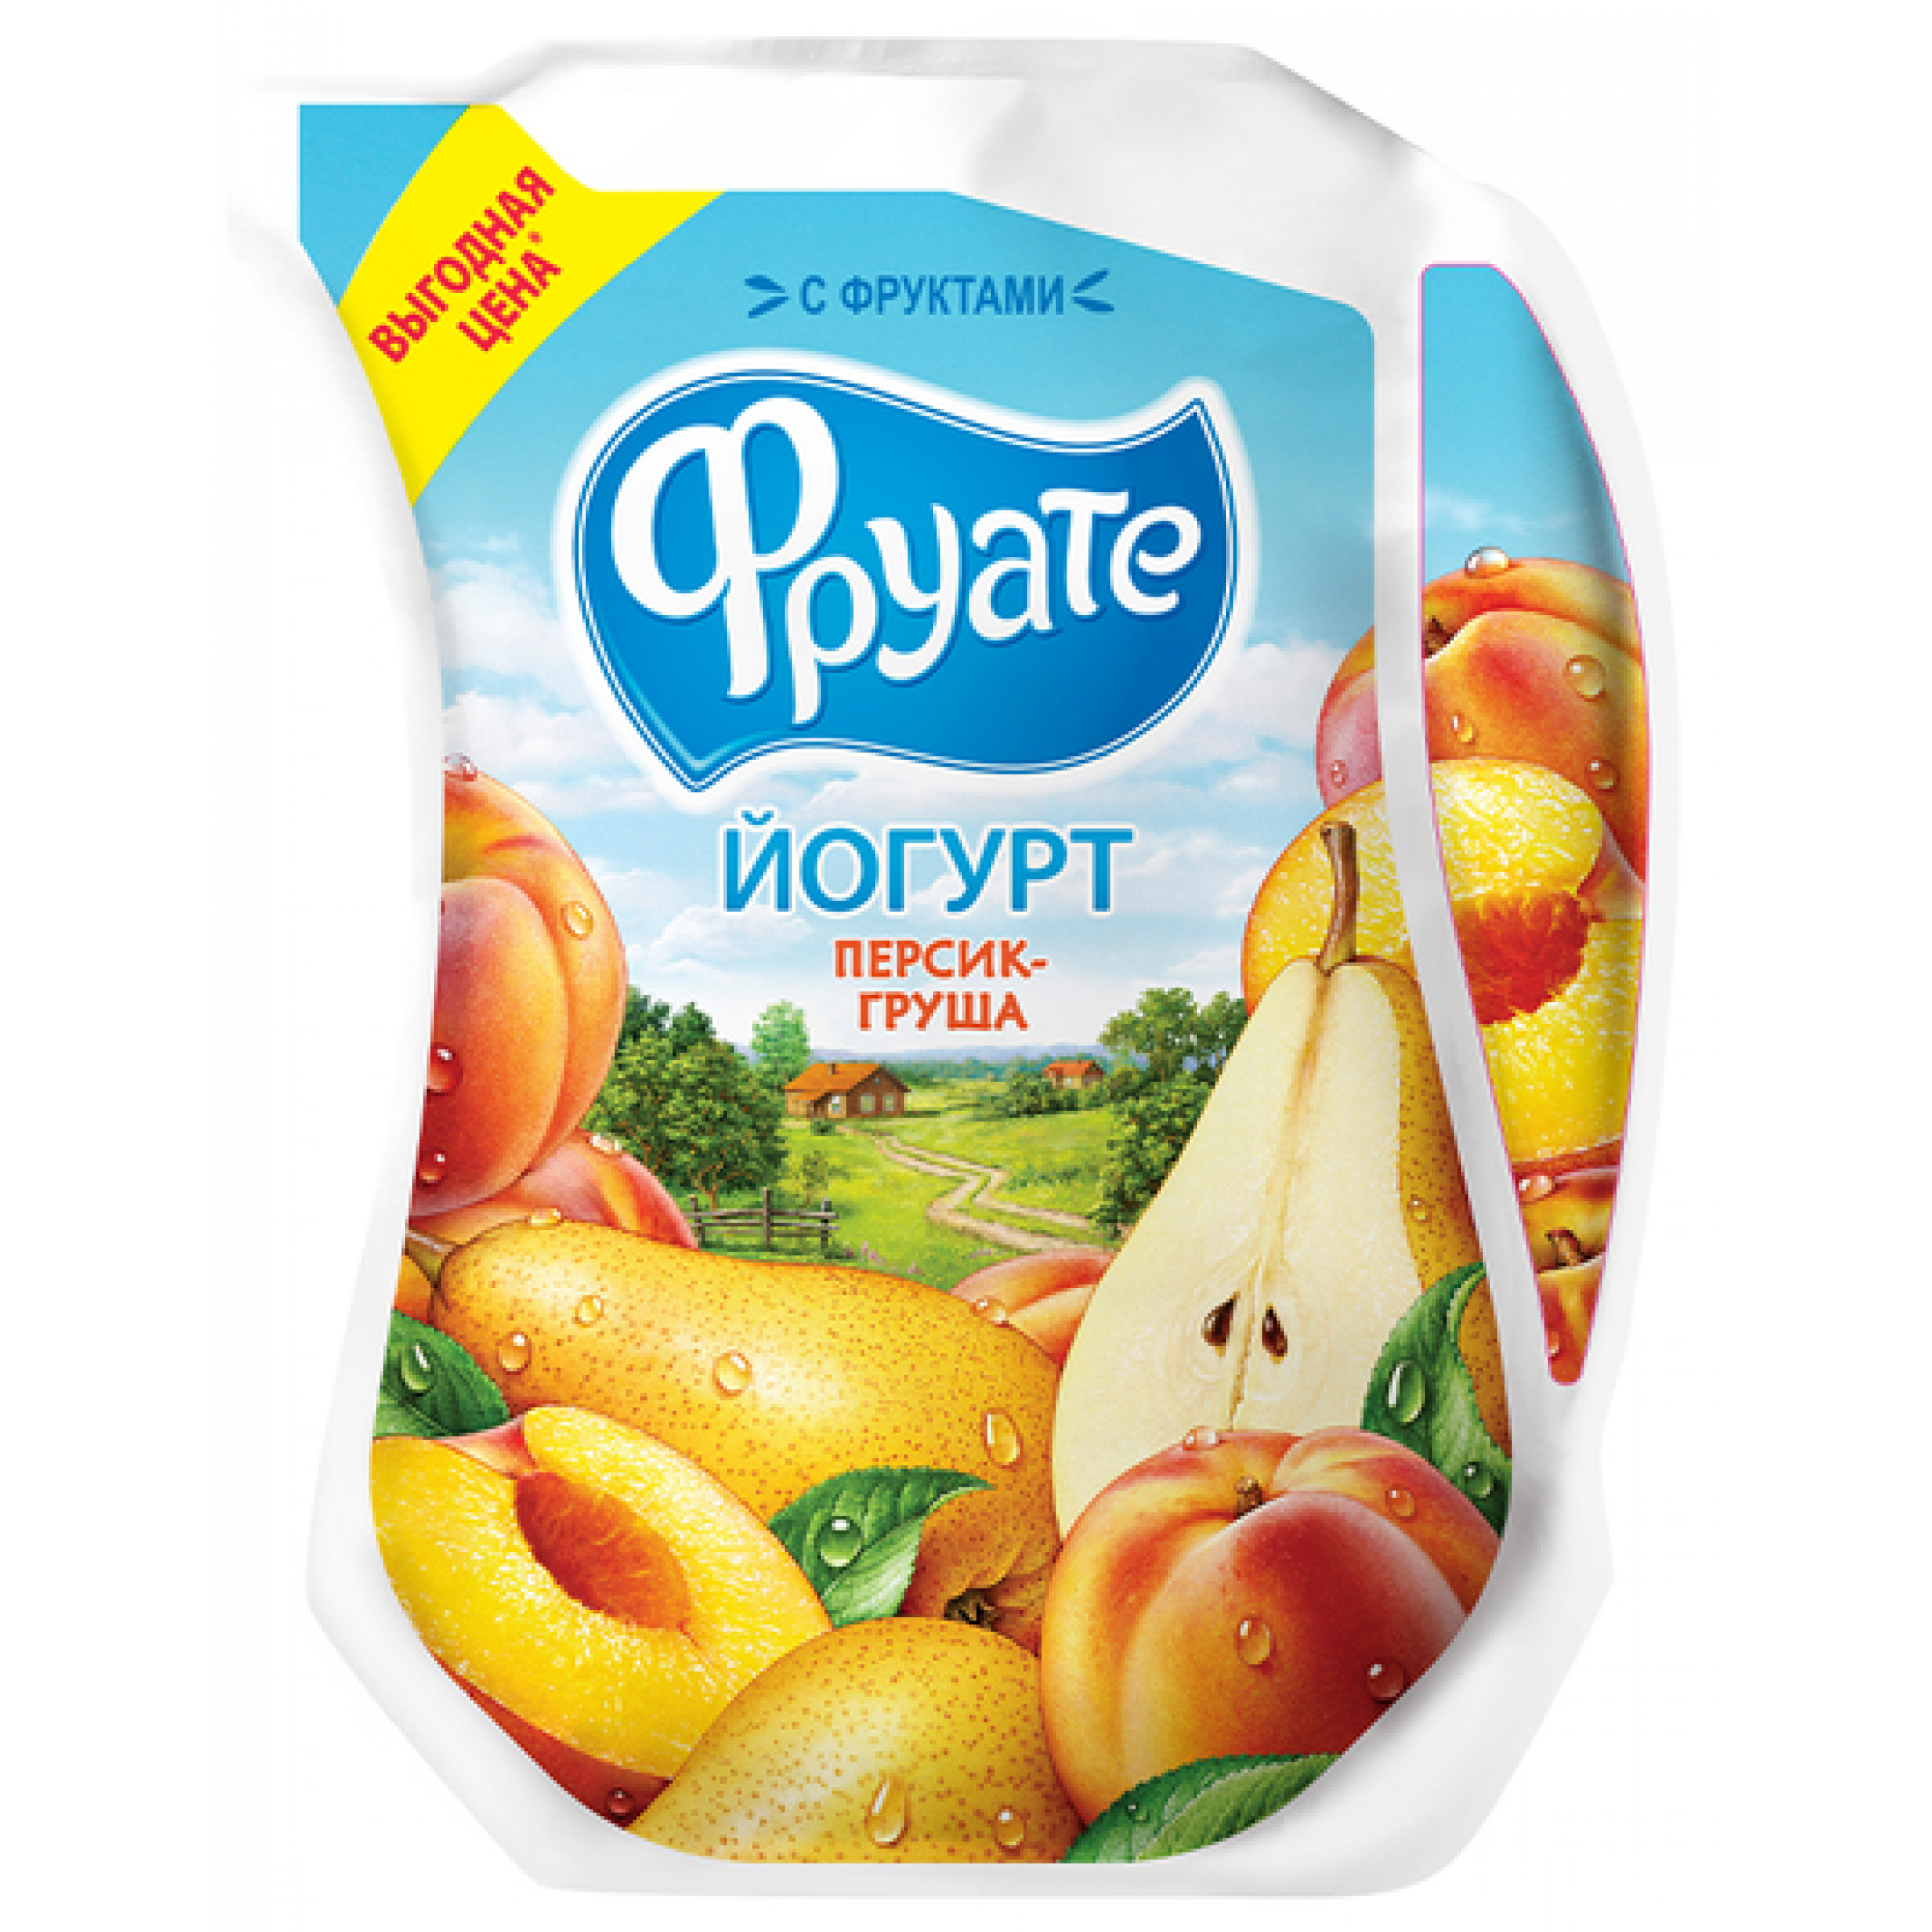 Питьевой йогурт Персик - Груша Фруате 1,5%, 950 г